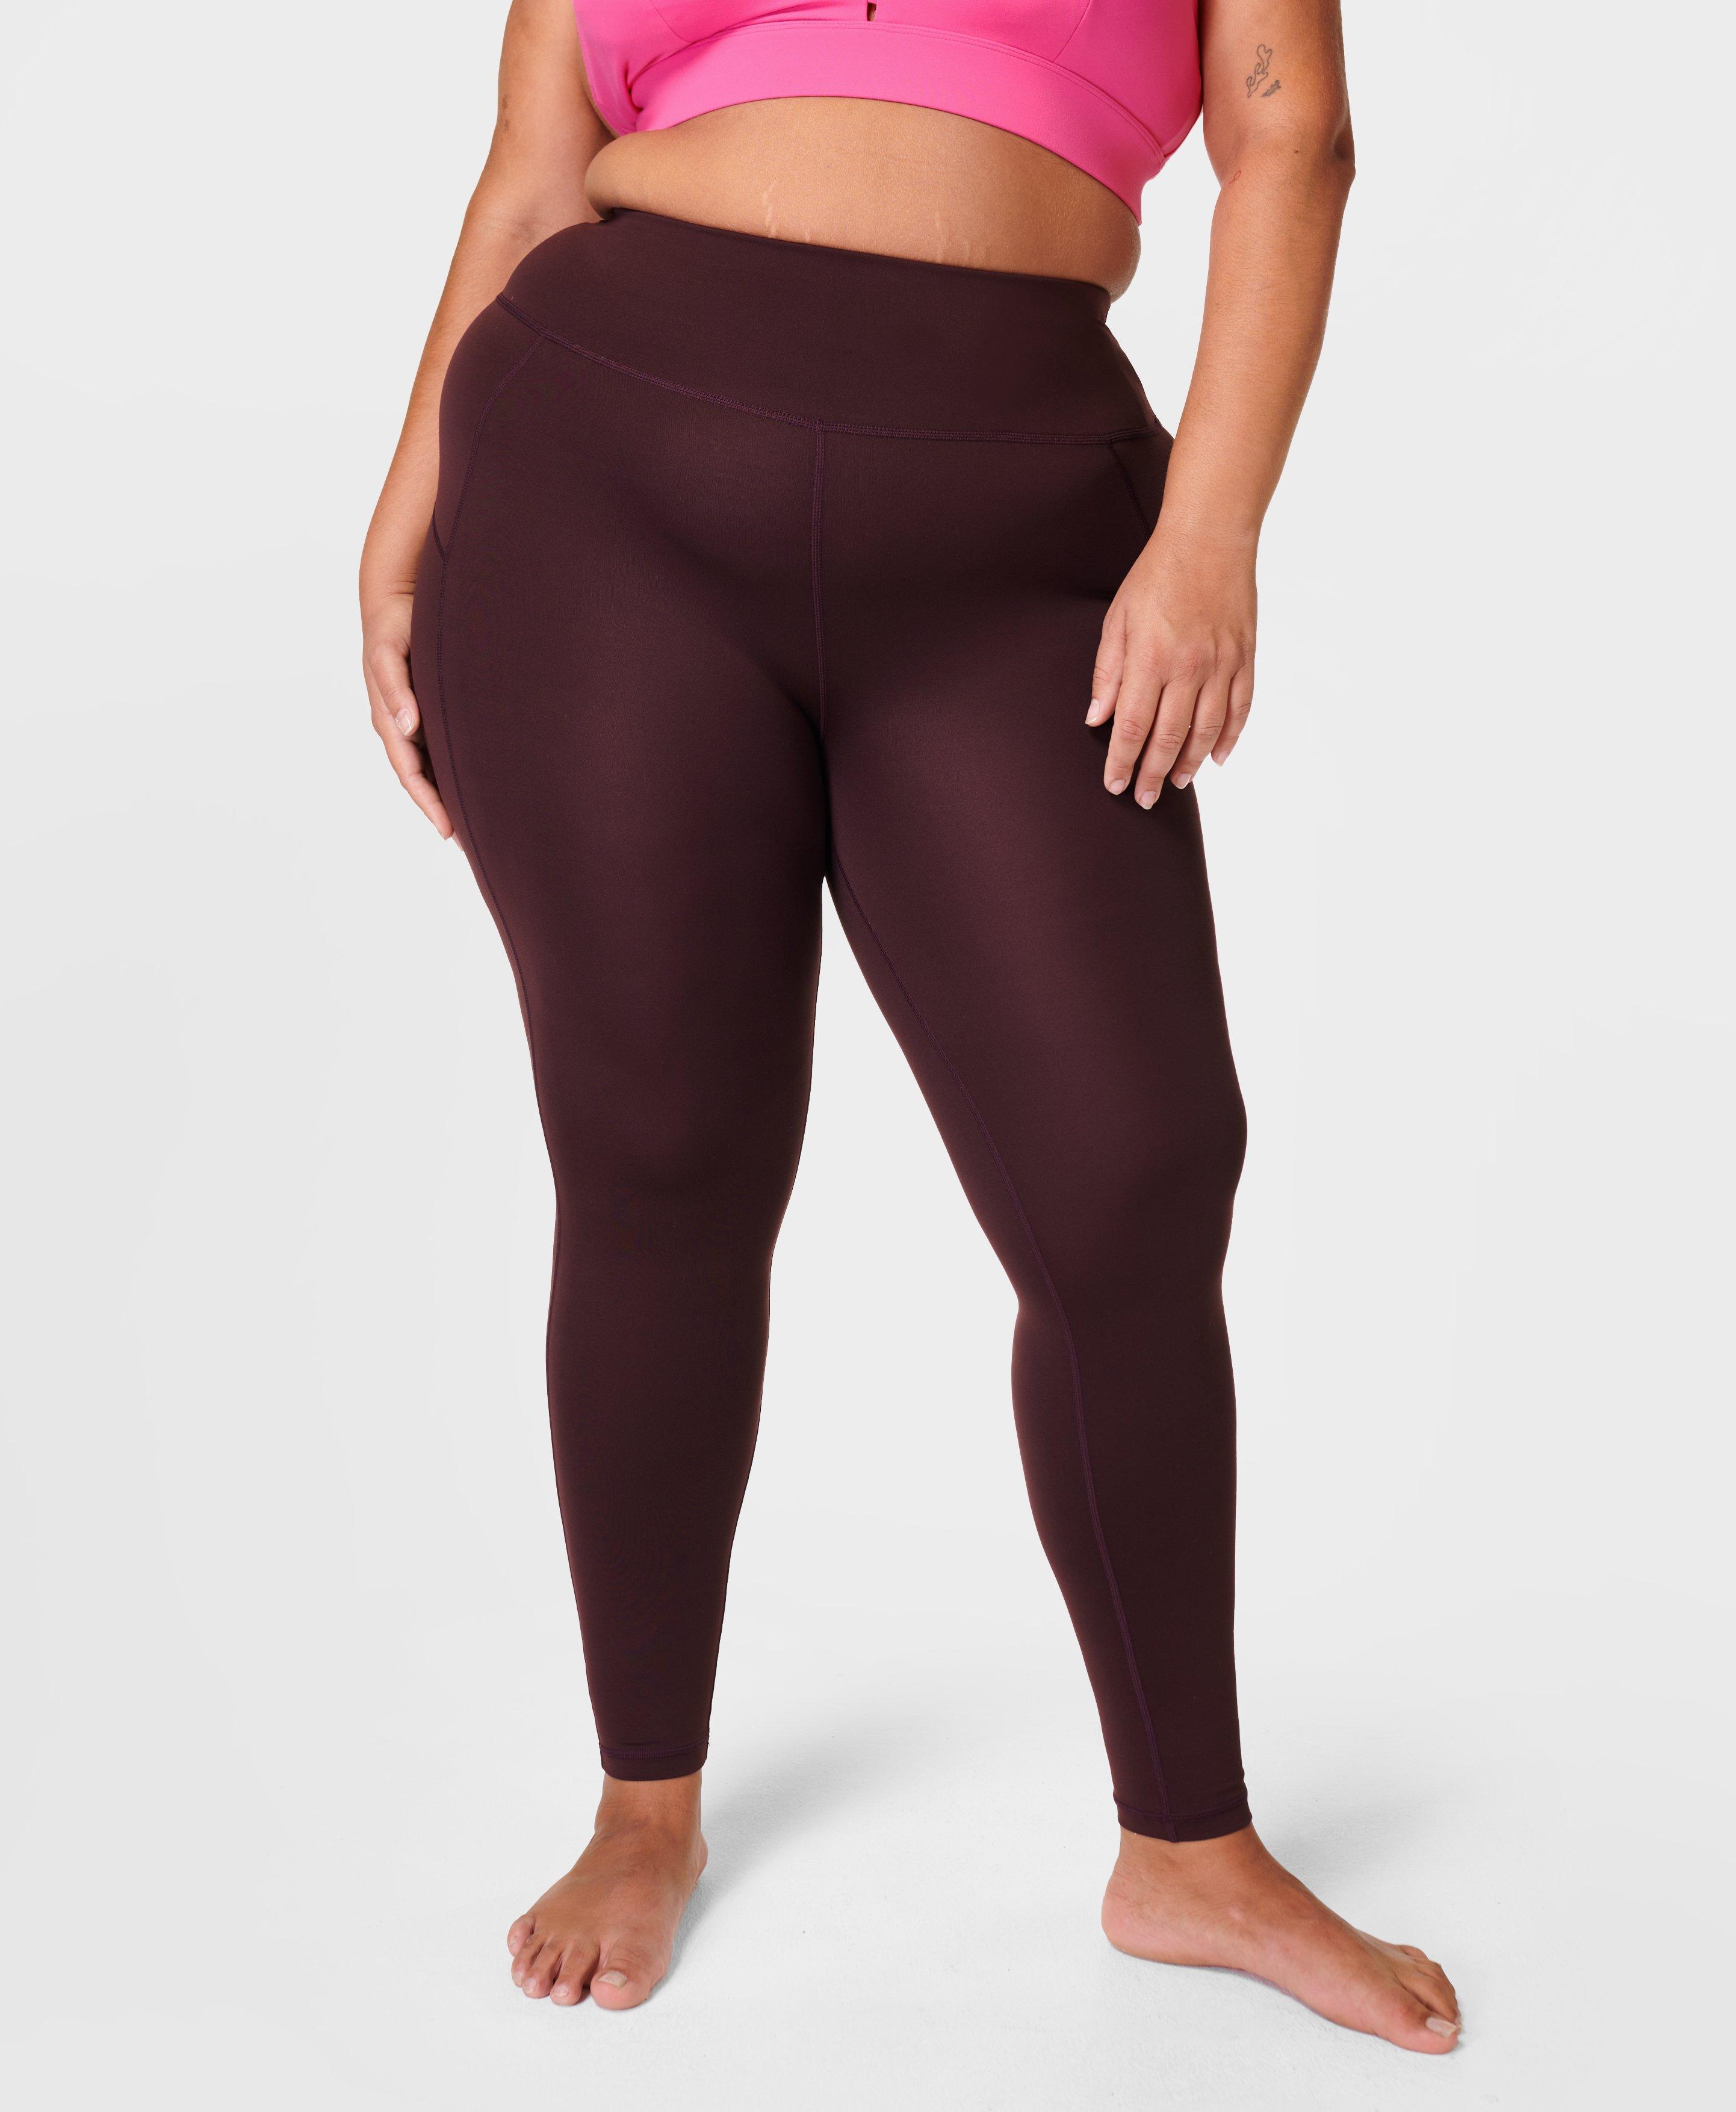 Pockets For Women - Sweaty Betty All Day Leggings, Purple, Women's